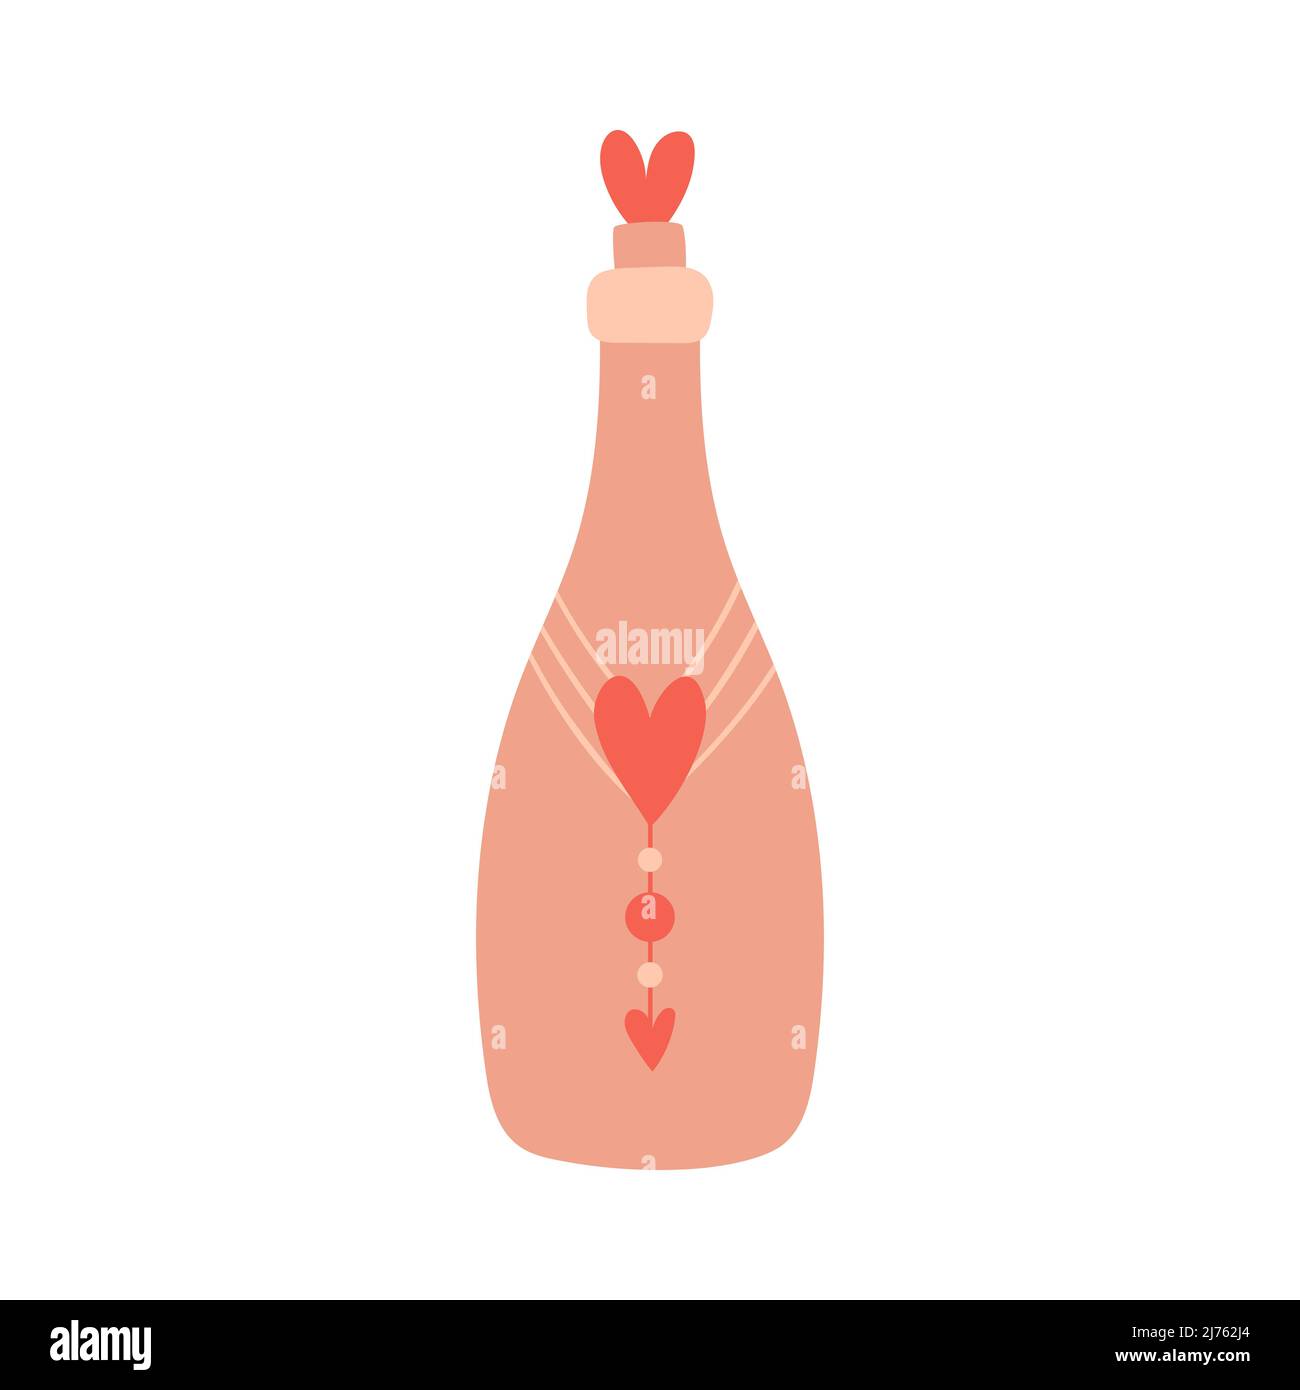 Glasflasche mit Kork, Dekor und Herzen. Trinken, Wein, Symbol der Romantik, Liebe. Ein dekoratives Element zum Valentinstag. Farbvektor-Abb. Stock Vektor